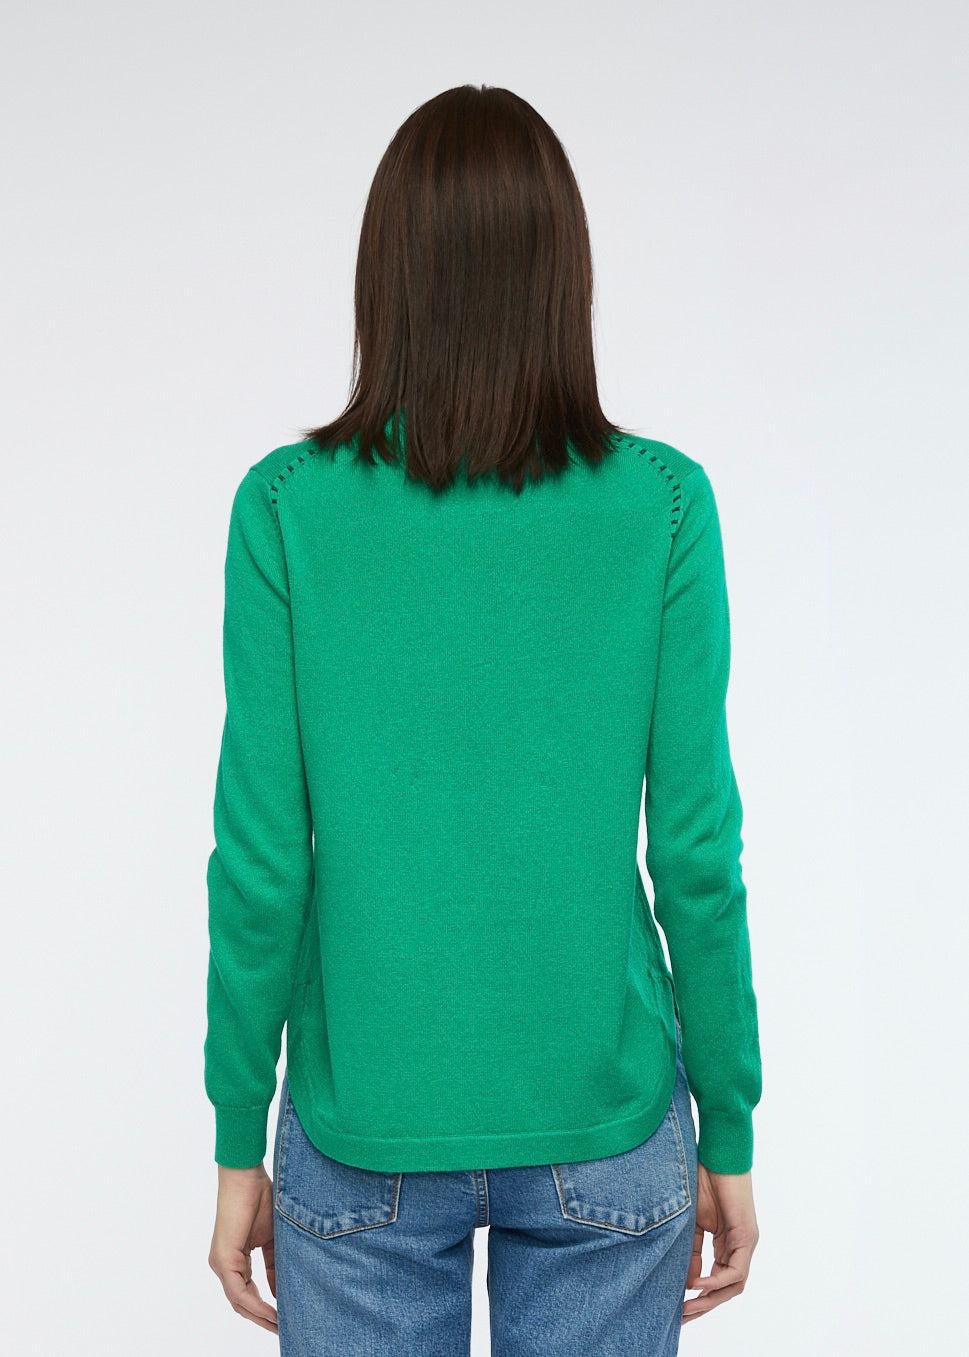 Zaket & Plover - Essential Shirt Bottom - Emerald